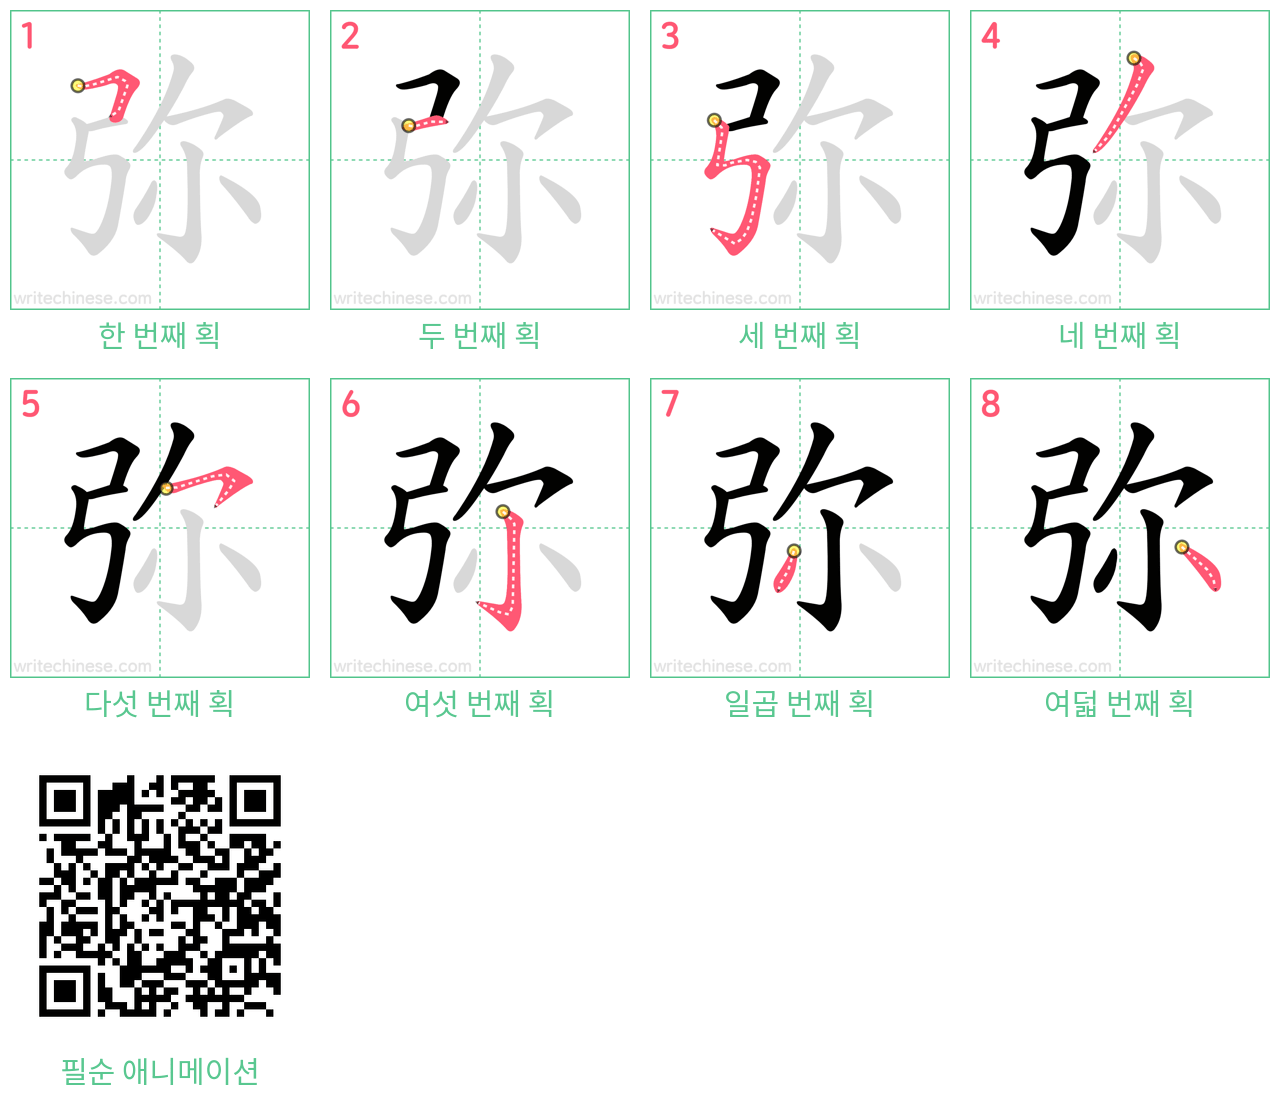 弥 step-by-step stroke order diagrams